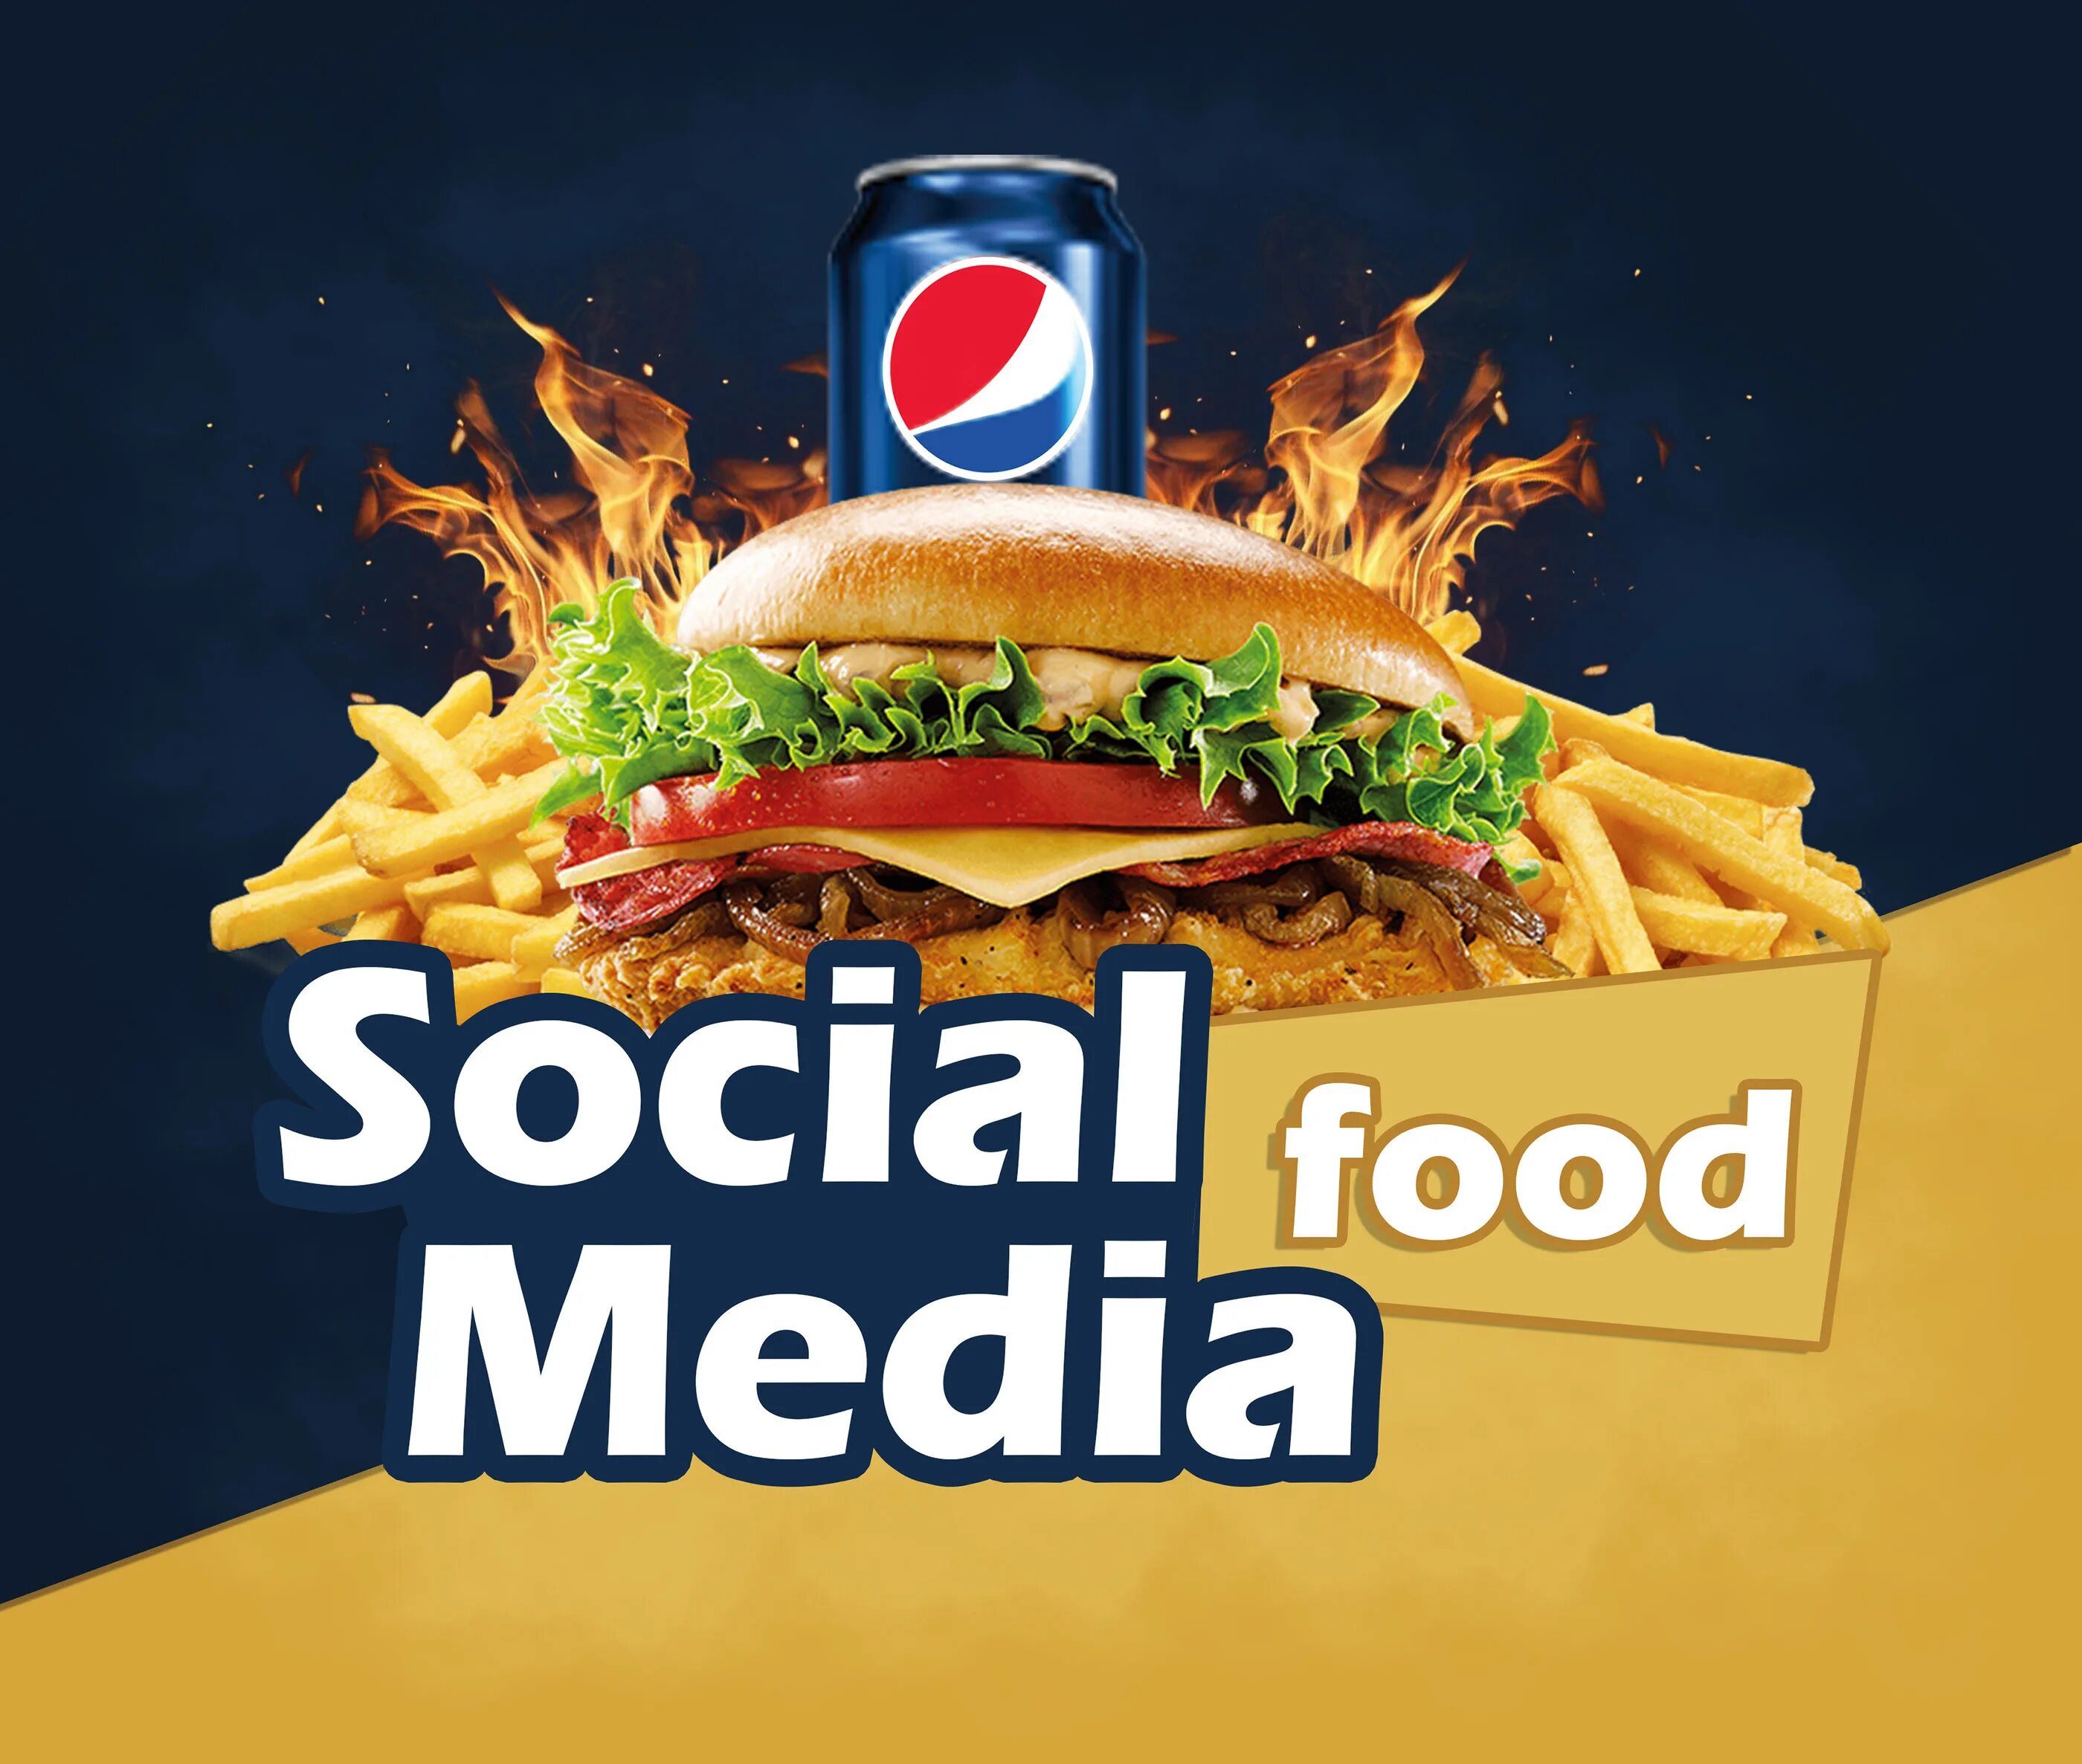 Media fast. Food social Media баннер. Food social Media Post. Smm Post Design фаст фуд. Fast food social Media Design.